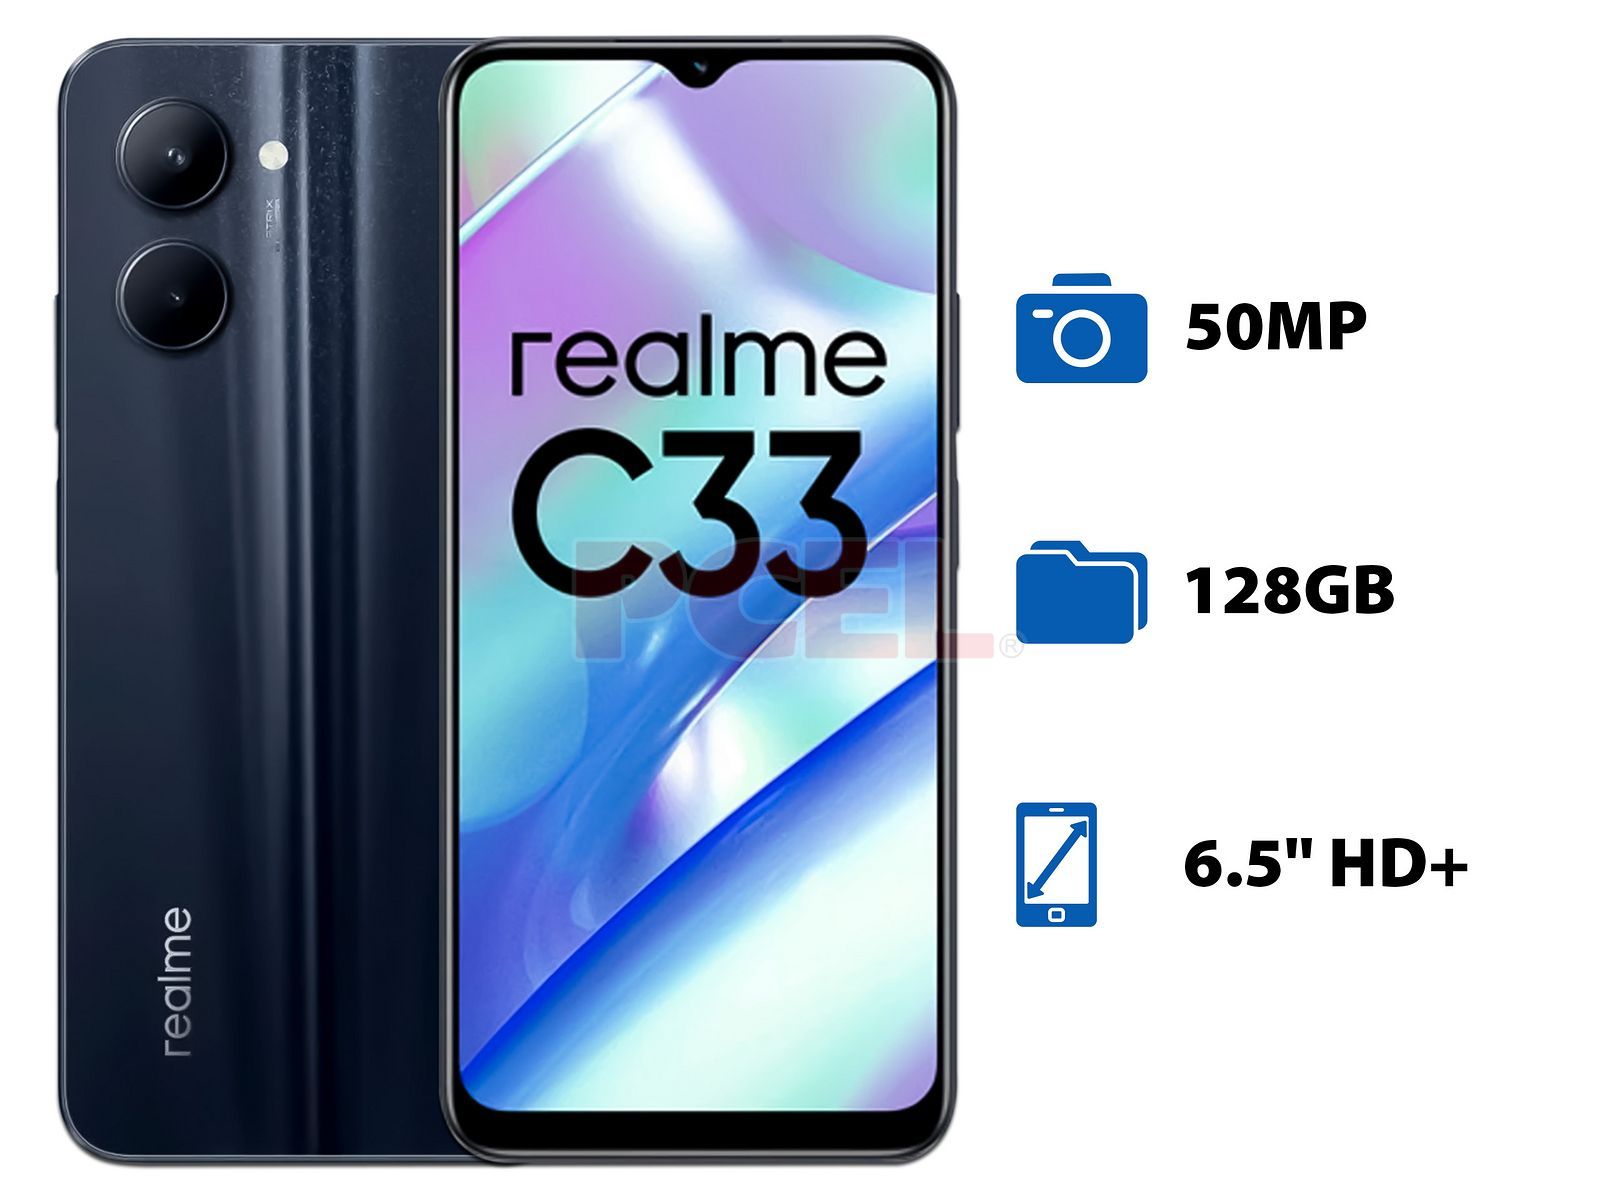 Smartphone Realme C33: Procesador Octa-Core (hasta 1.8 GHz), Memoria RAM de  4GB, Almacenamiento de 128GB, Pantalla LED Multitouch de 6.5 HD+,  Bluetooth, Wi-Fi, 4G, Cámara principal de 50MP, Android 12. Color Negro.